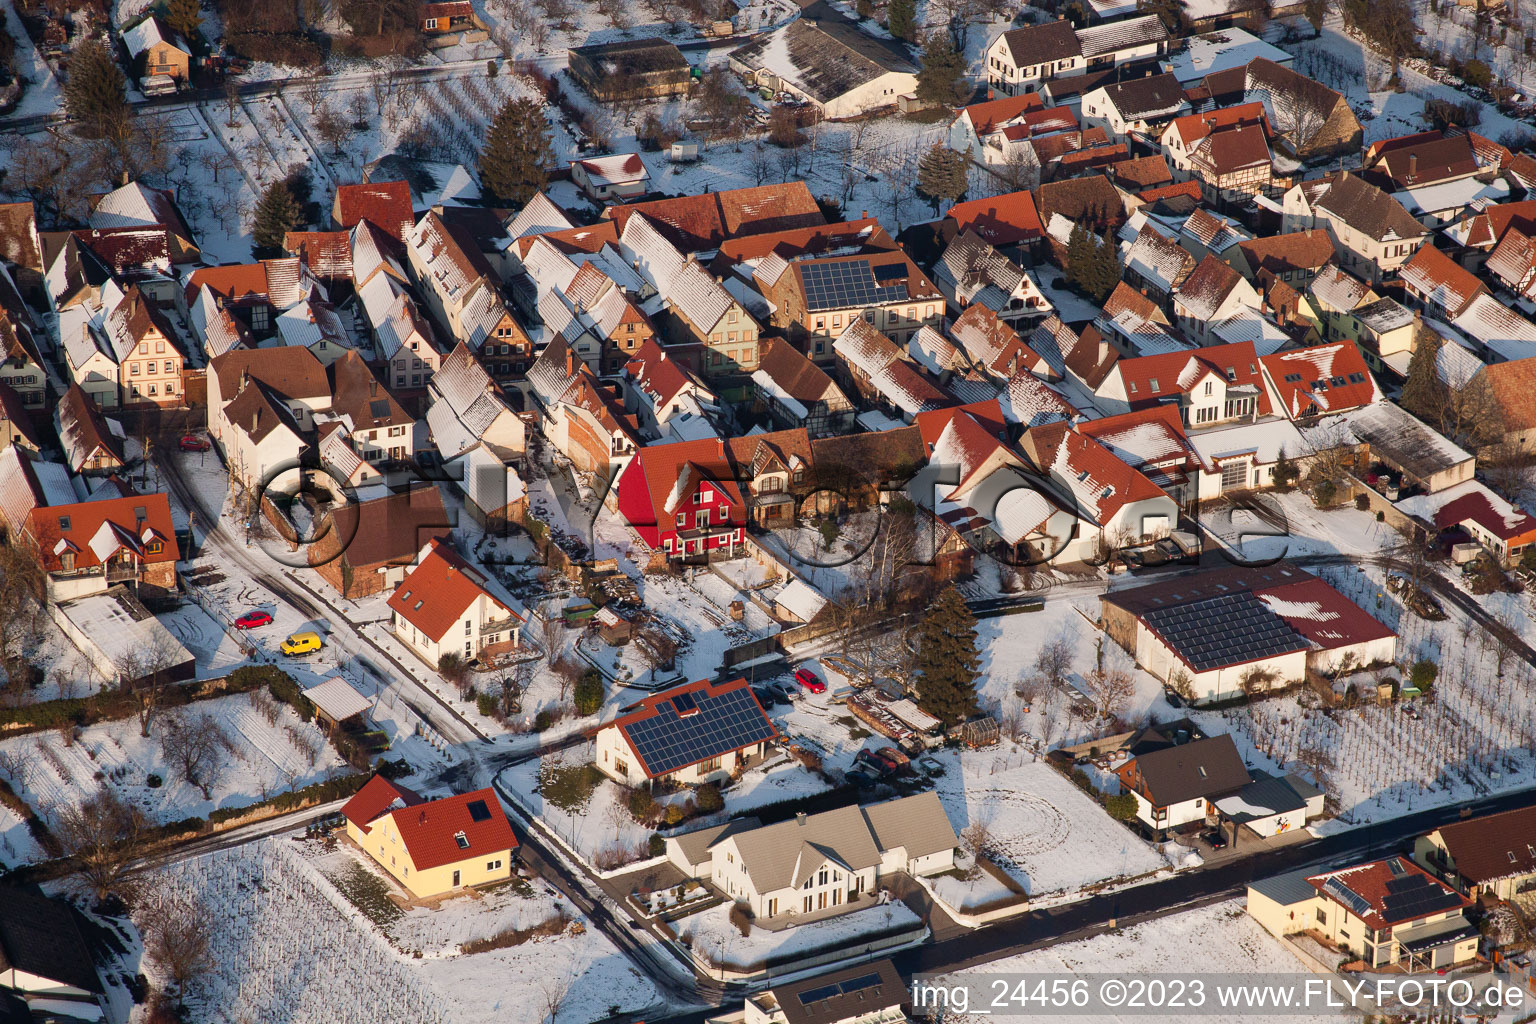 Aerial view of In winter in the district Heuchelheim in Heuchelheim-Klingen in the state Rhineland-Palatinate, Germany